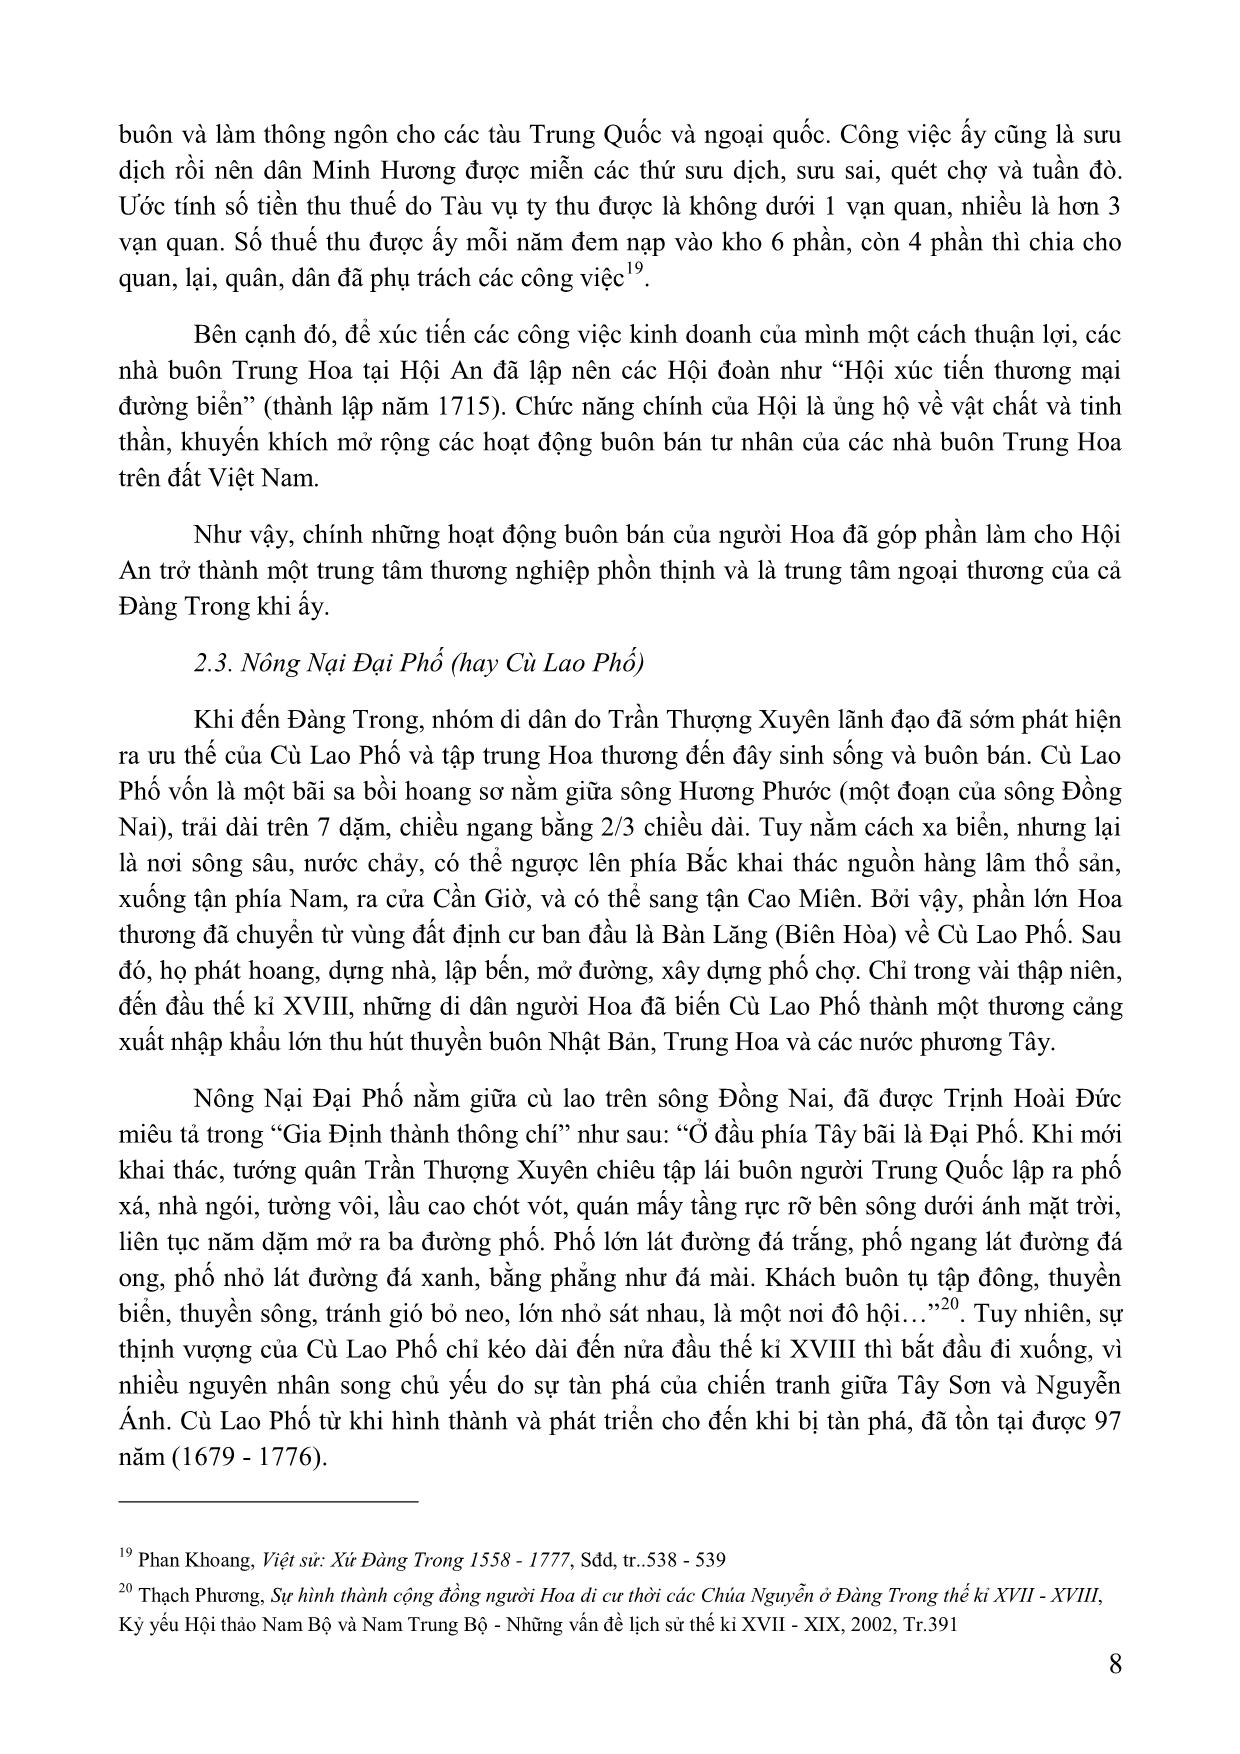 Vai trò của người hoa trong việc hình thành và phát triển các đô thị ở trung và Nam Bộ Việt Nam (thế kỉ XVII-XIX) trang 8